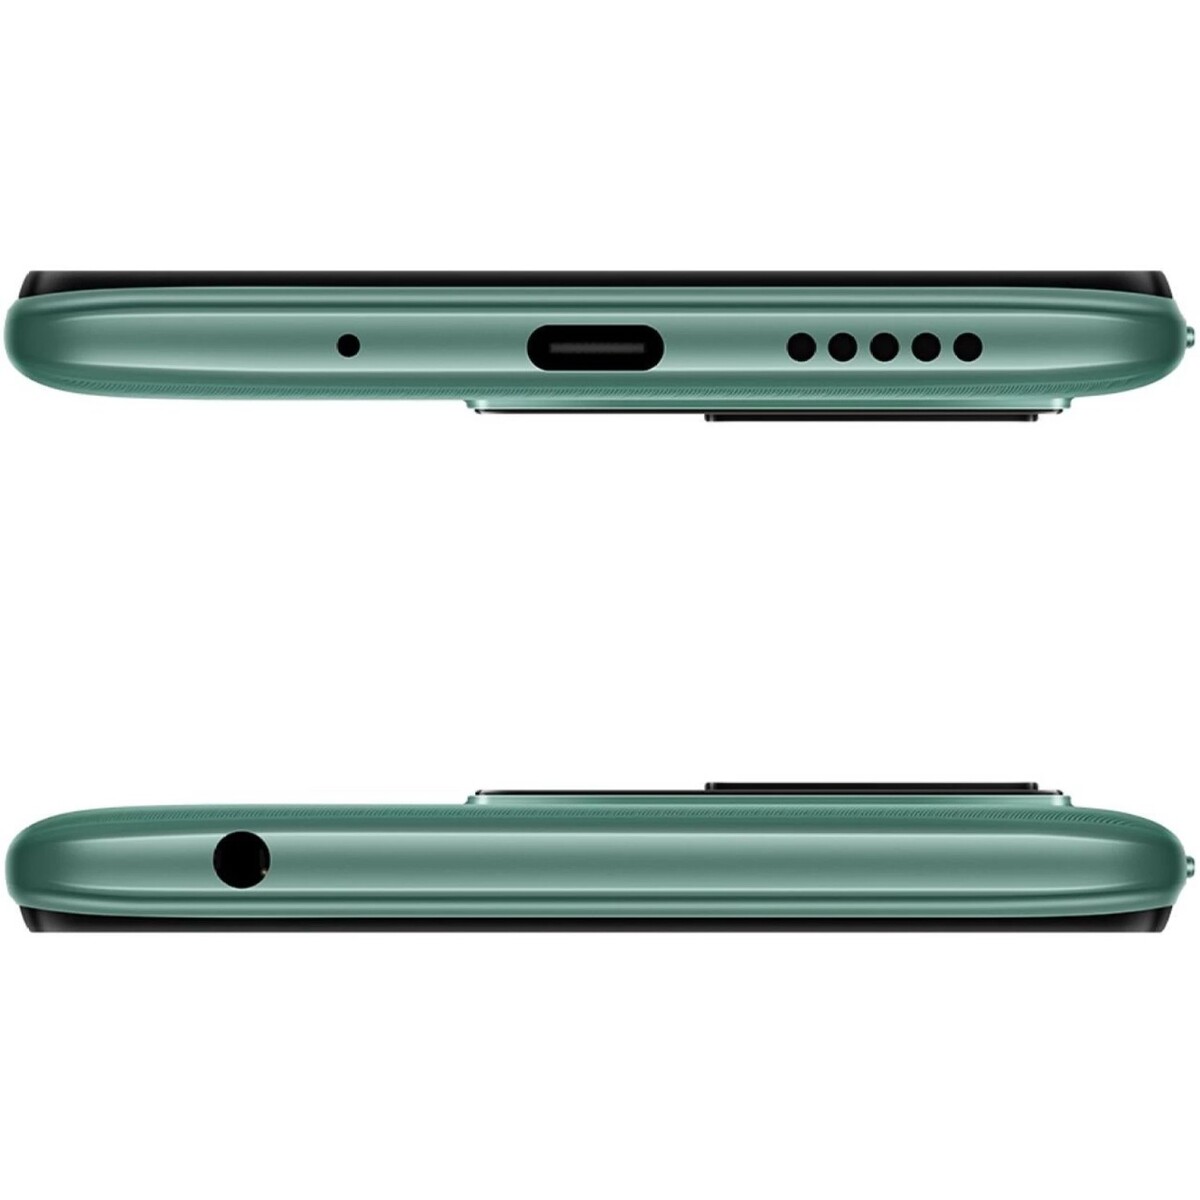 Xiaomi Redmi 10 4GB/64GB Caribbean Green